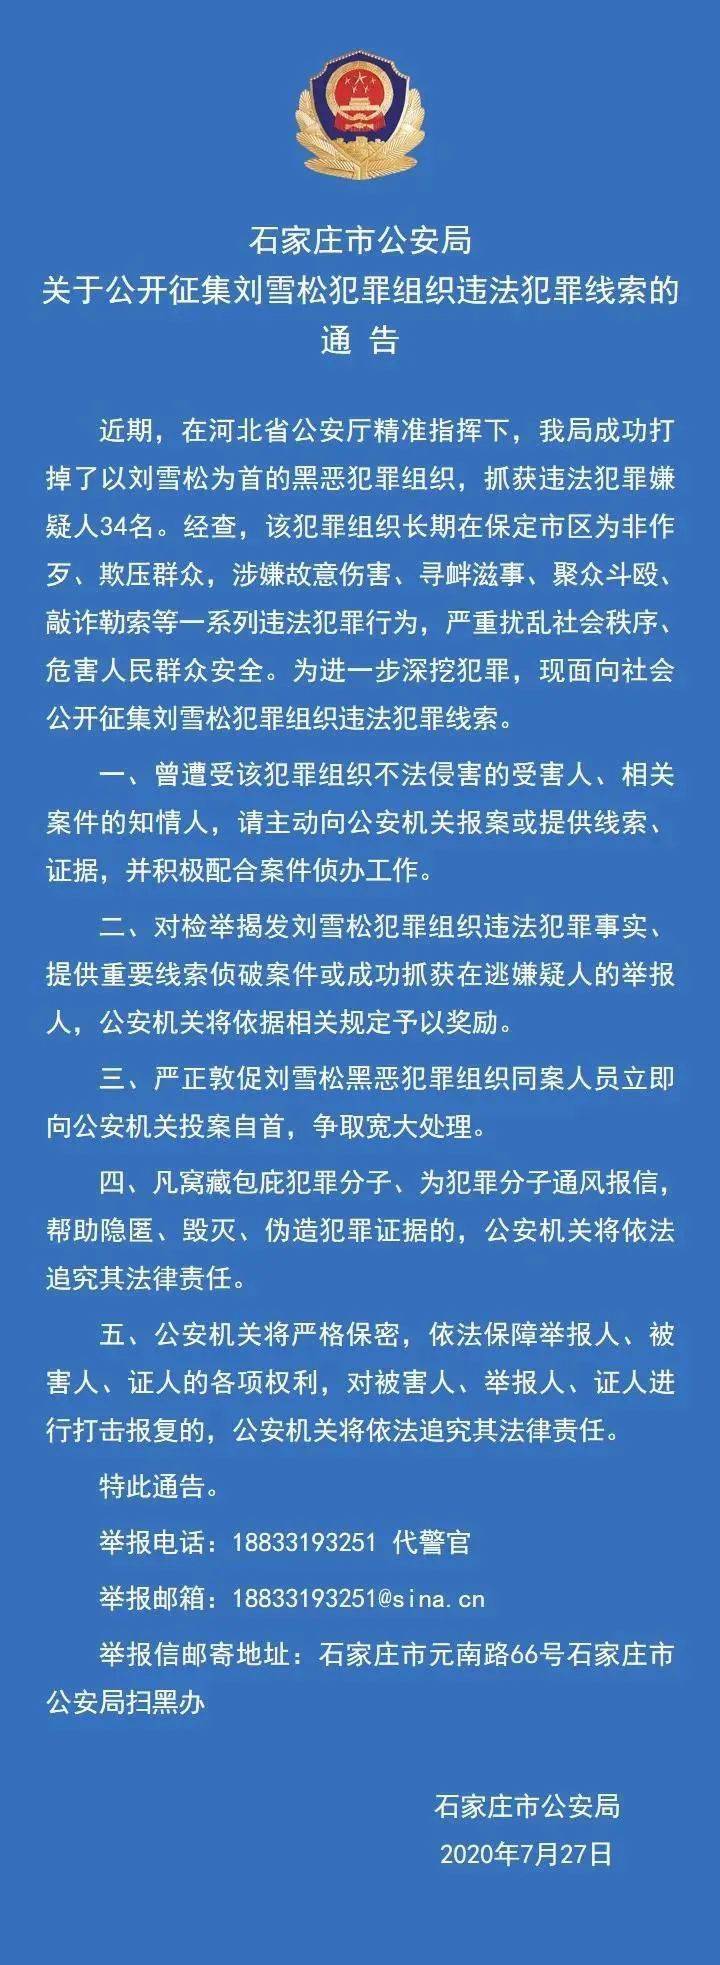 石家庄市公安局关于公开征集保定刘雪松犯罪组织违法犯罪线索的通告